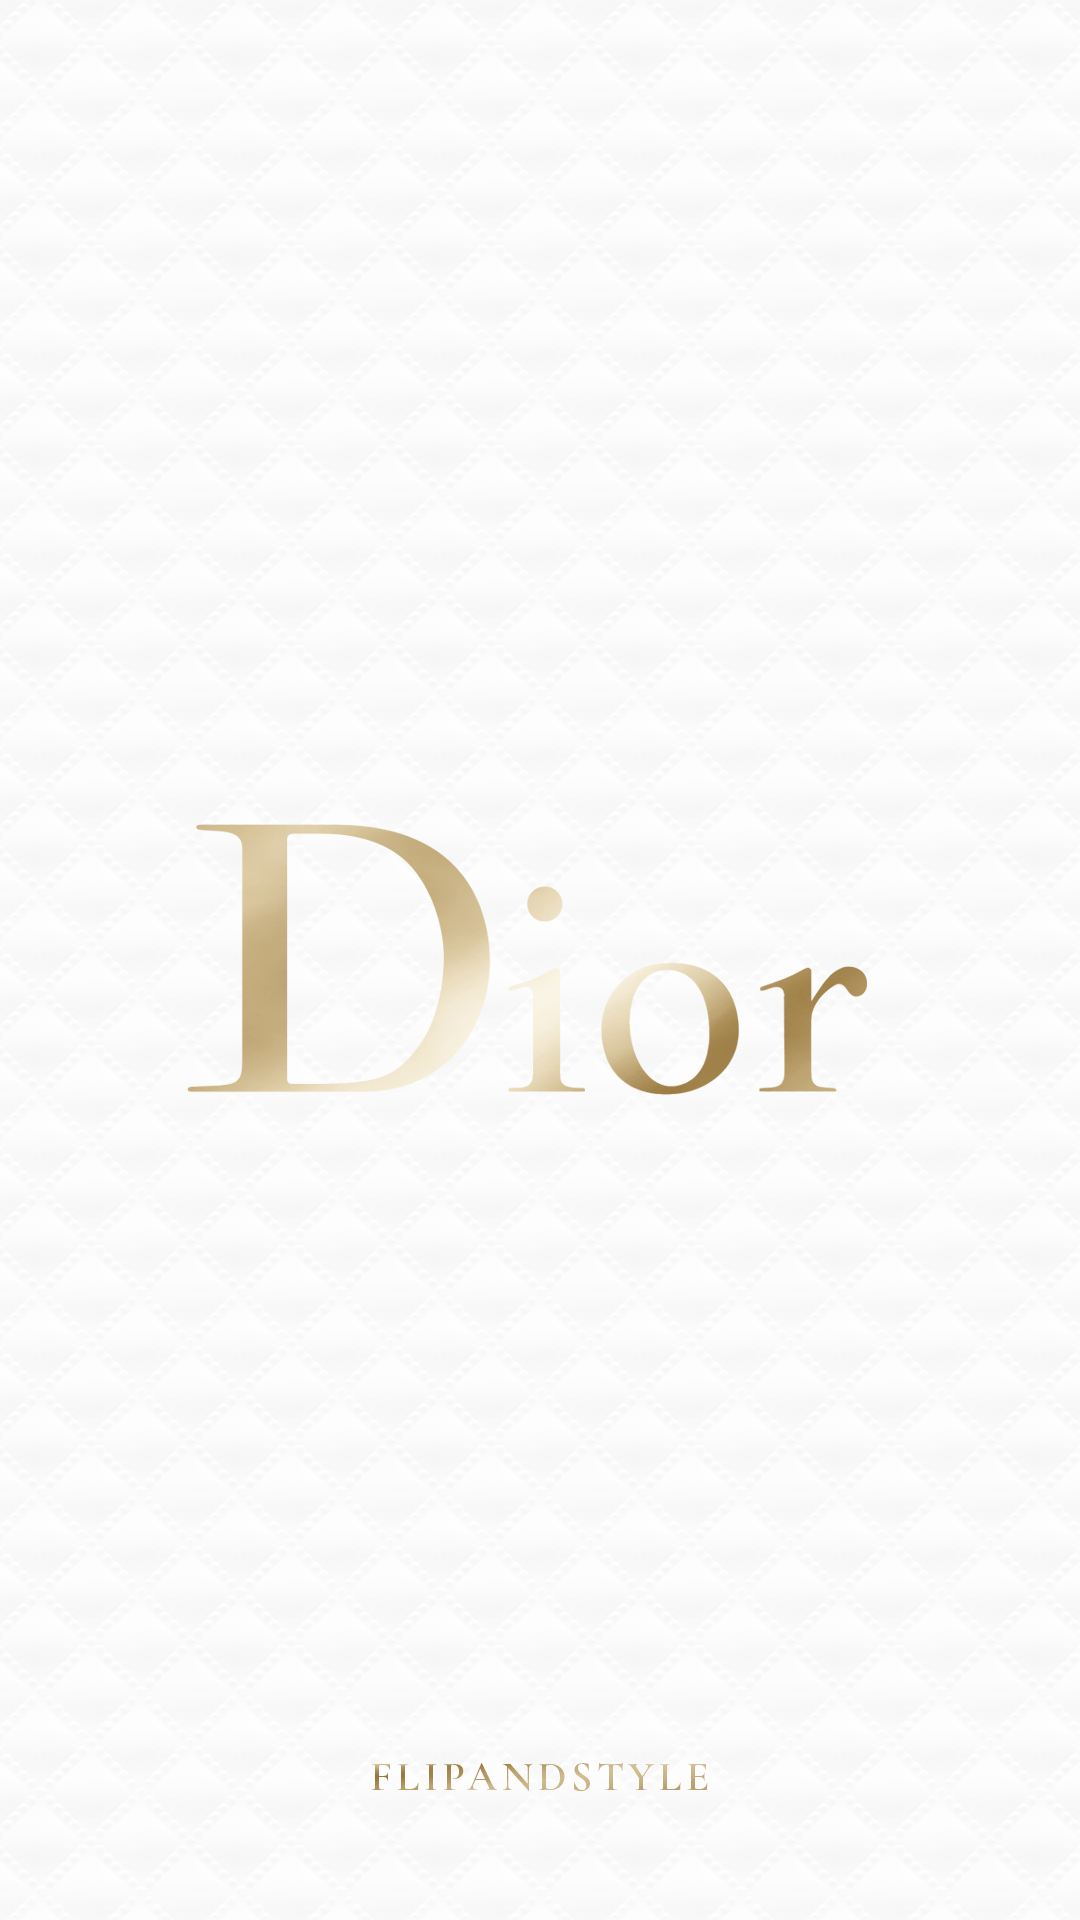 Dior iPhone Wallpapers là lựa chọn hoàn hảo cho những ai yêu thích sự sang trọng và đẳng cấp của thương hiệu Dior. Hãy trang trí cho chiếc iPhone của bạn với những hình nền vô cùng độc đáo và ấn tượng.